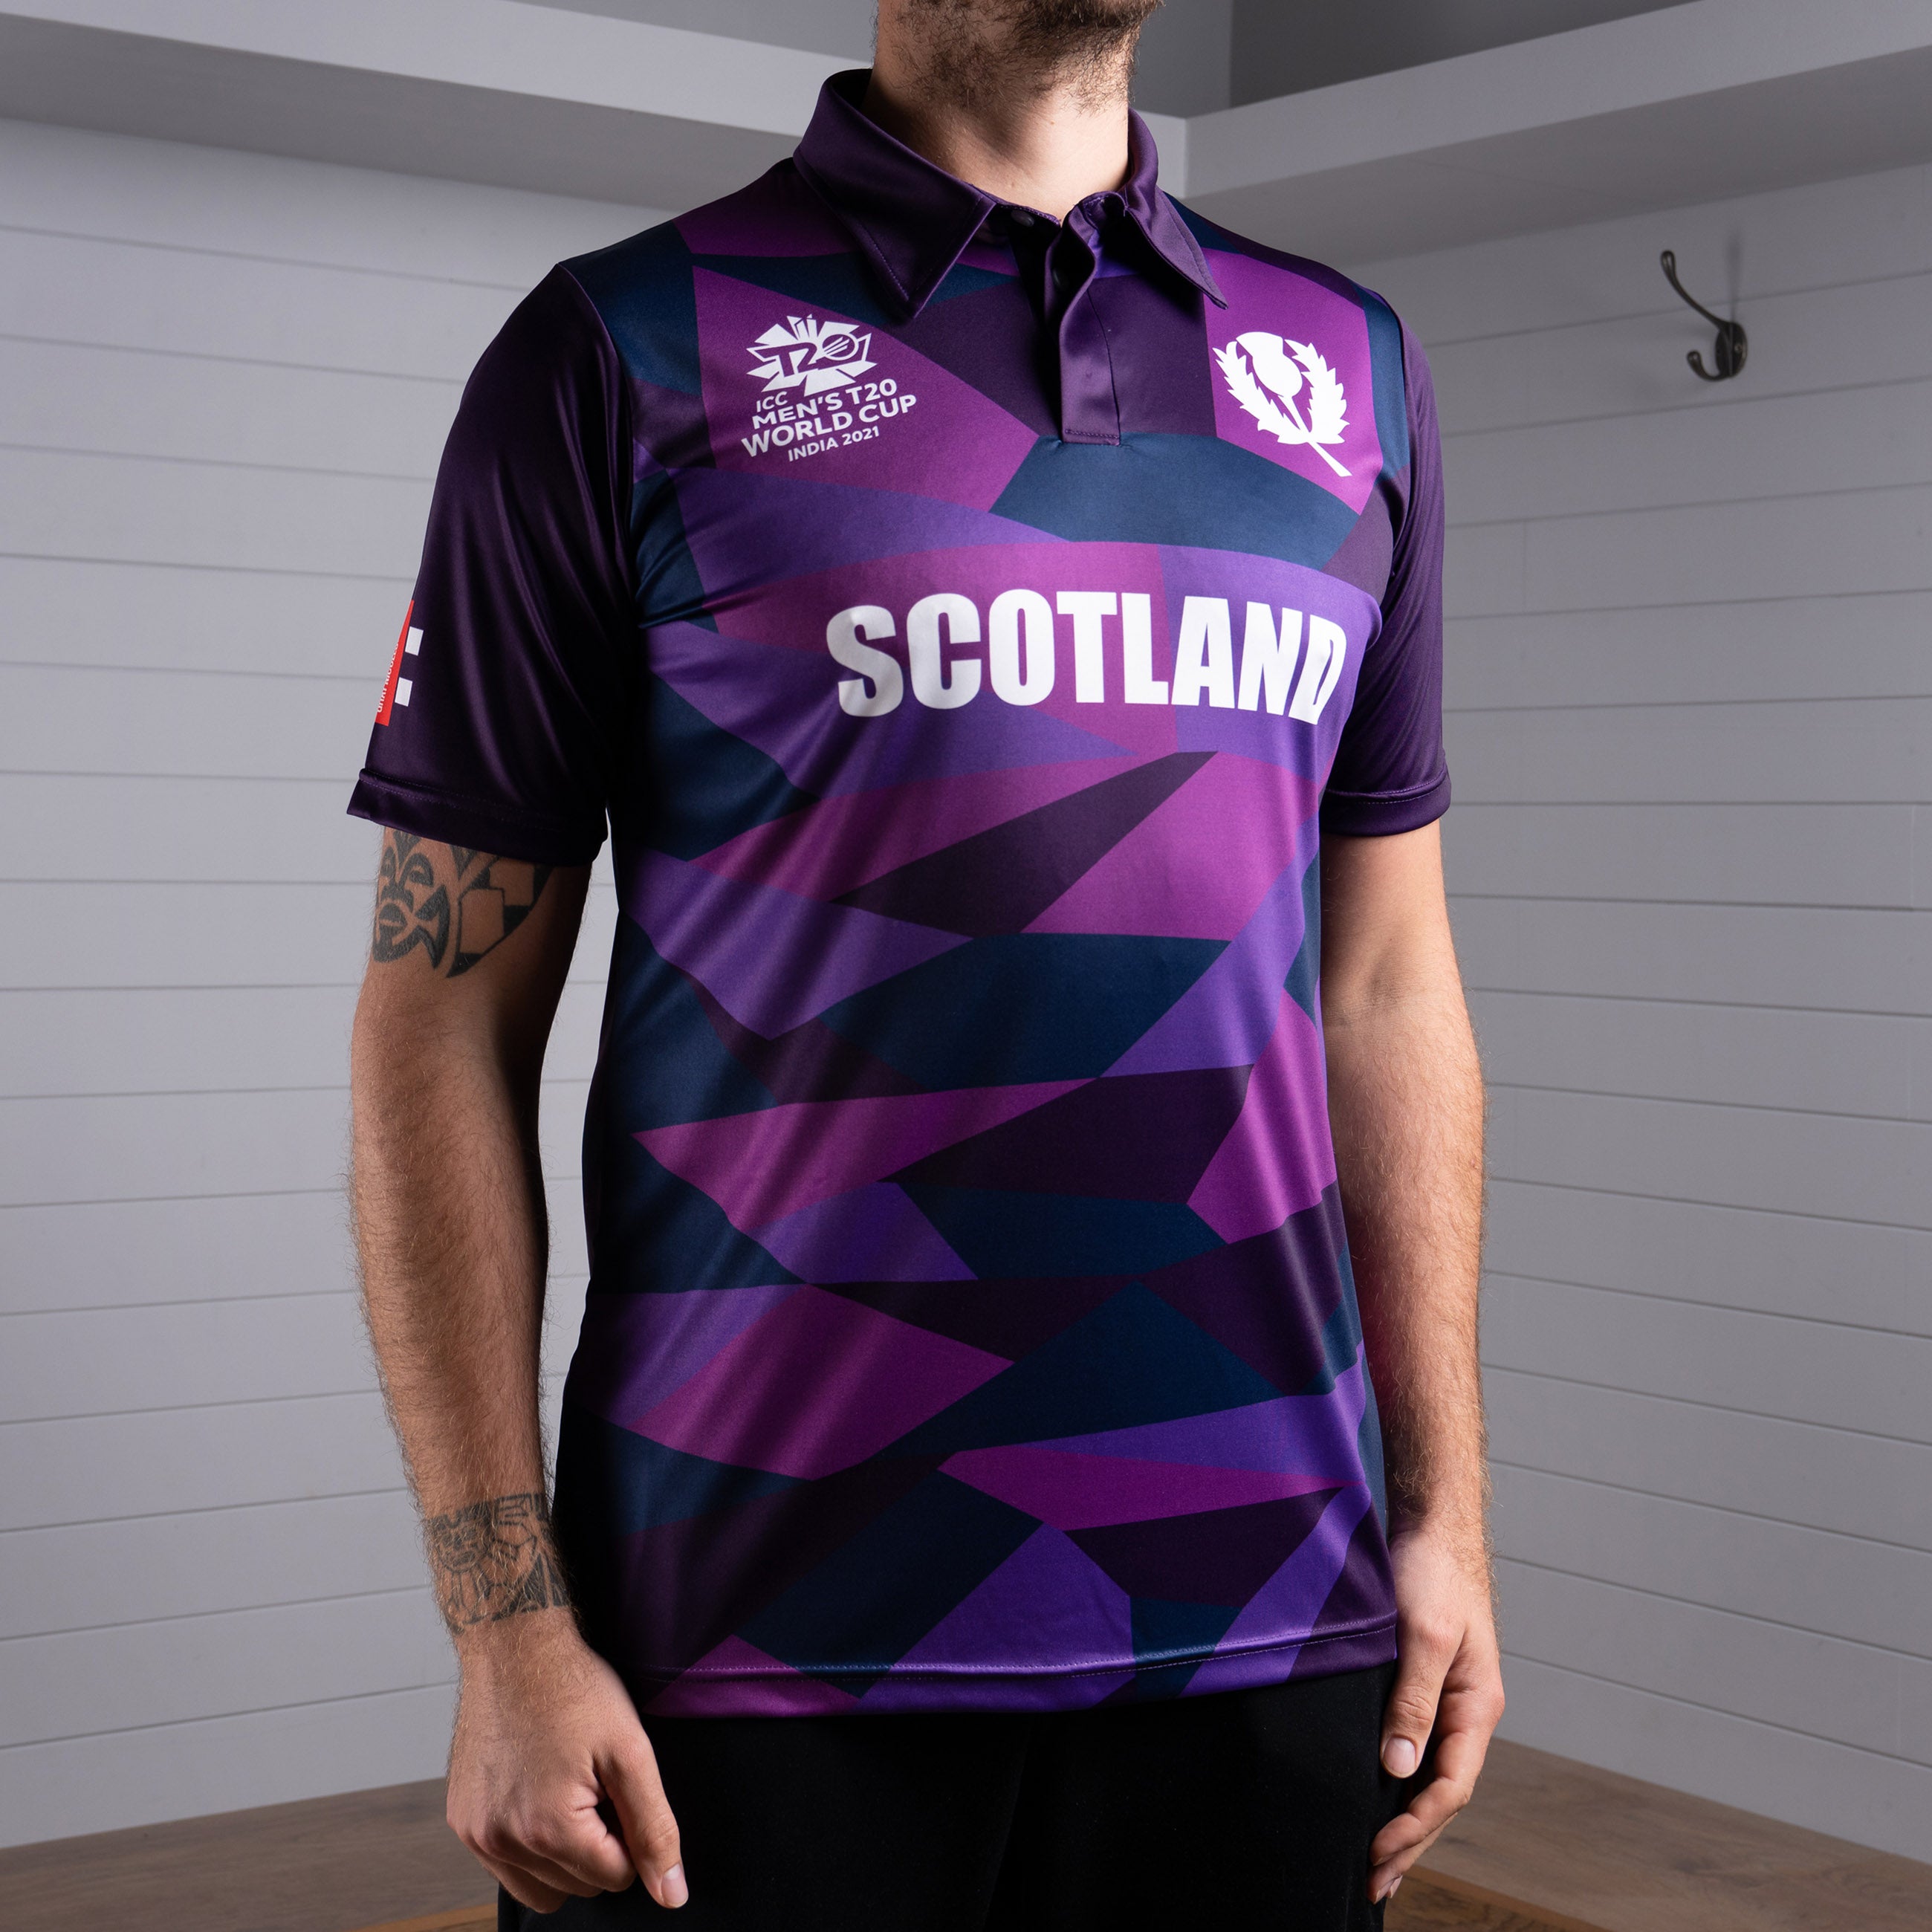 Cricket Scotland T20 World Cup Short Sleeve Shirt - Junior